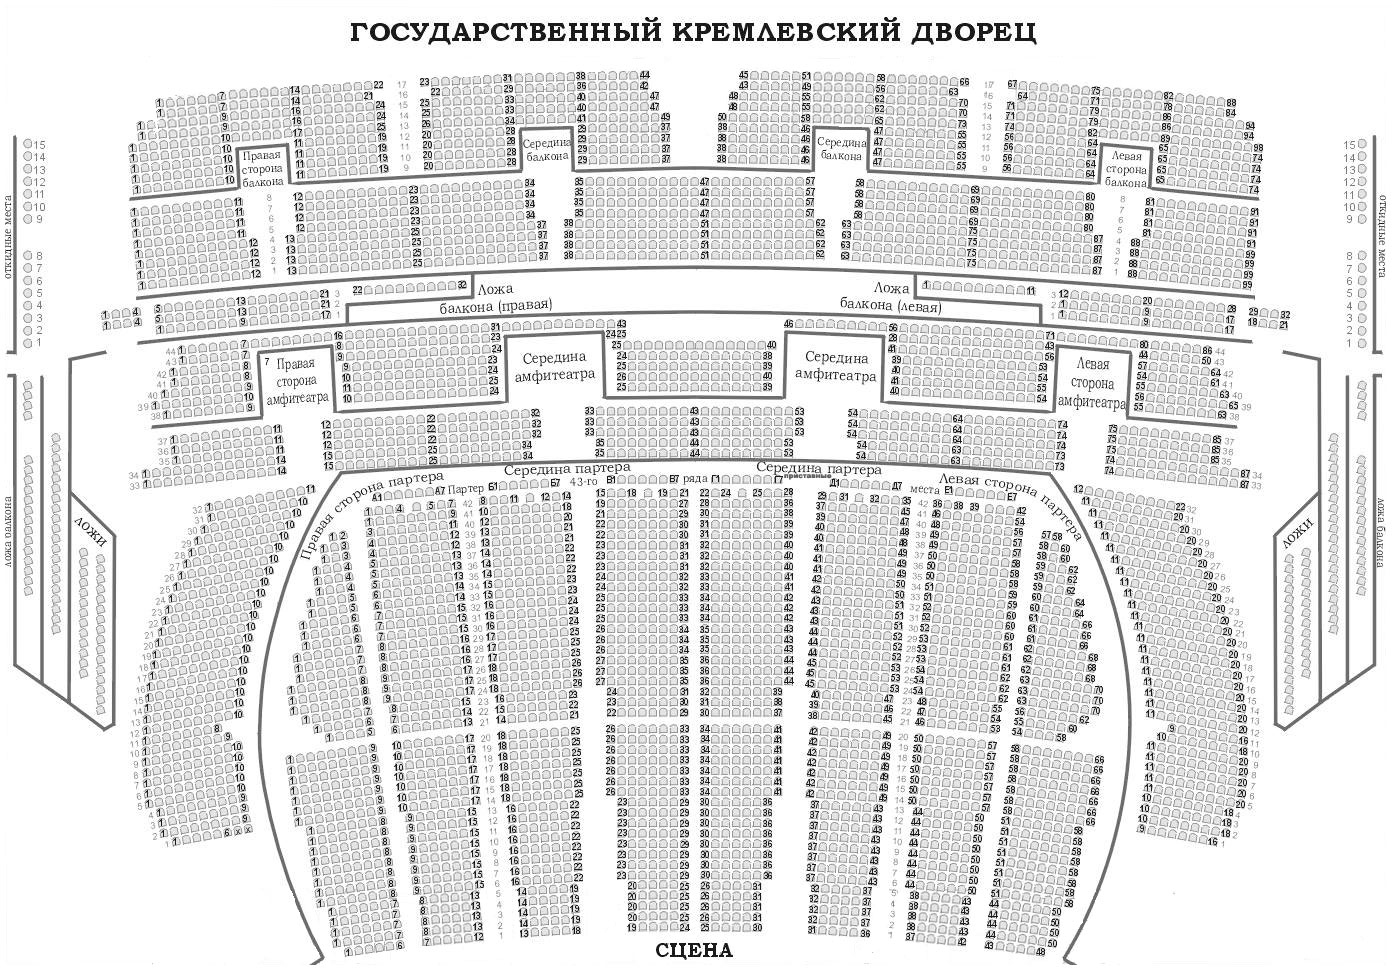 кремлевский дворец малый зал фото